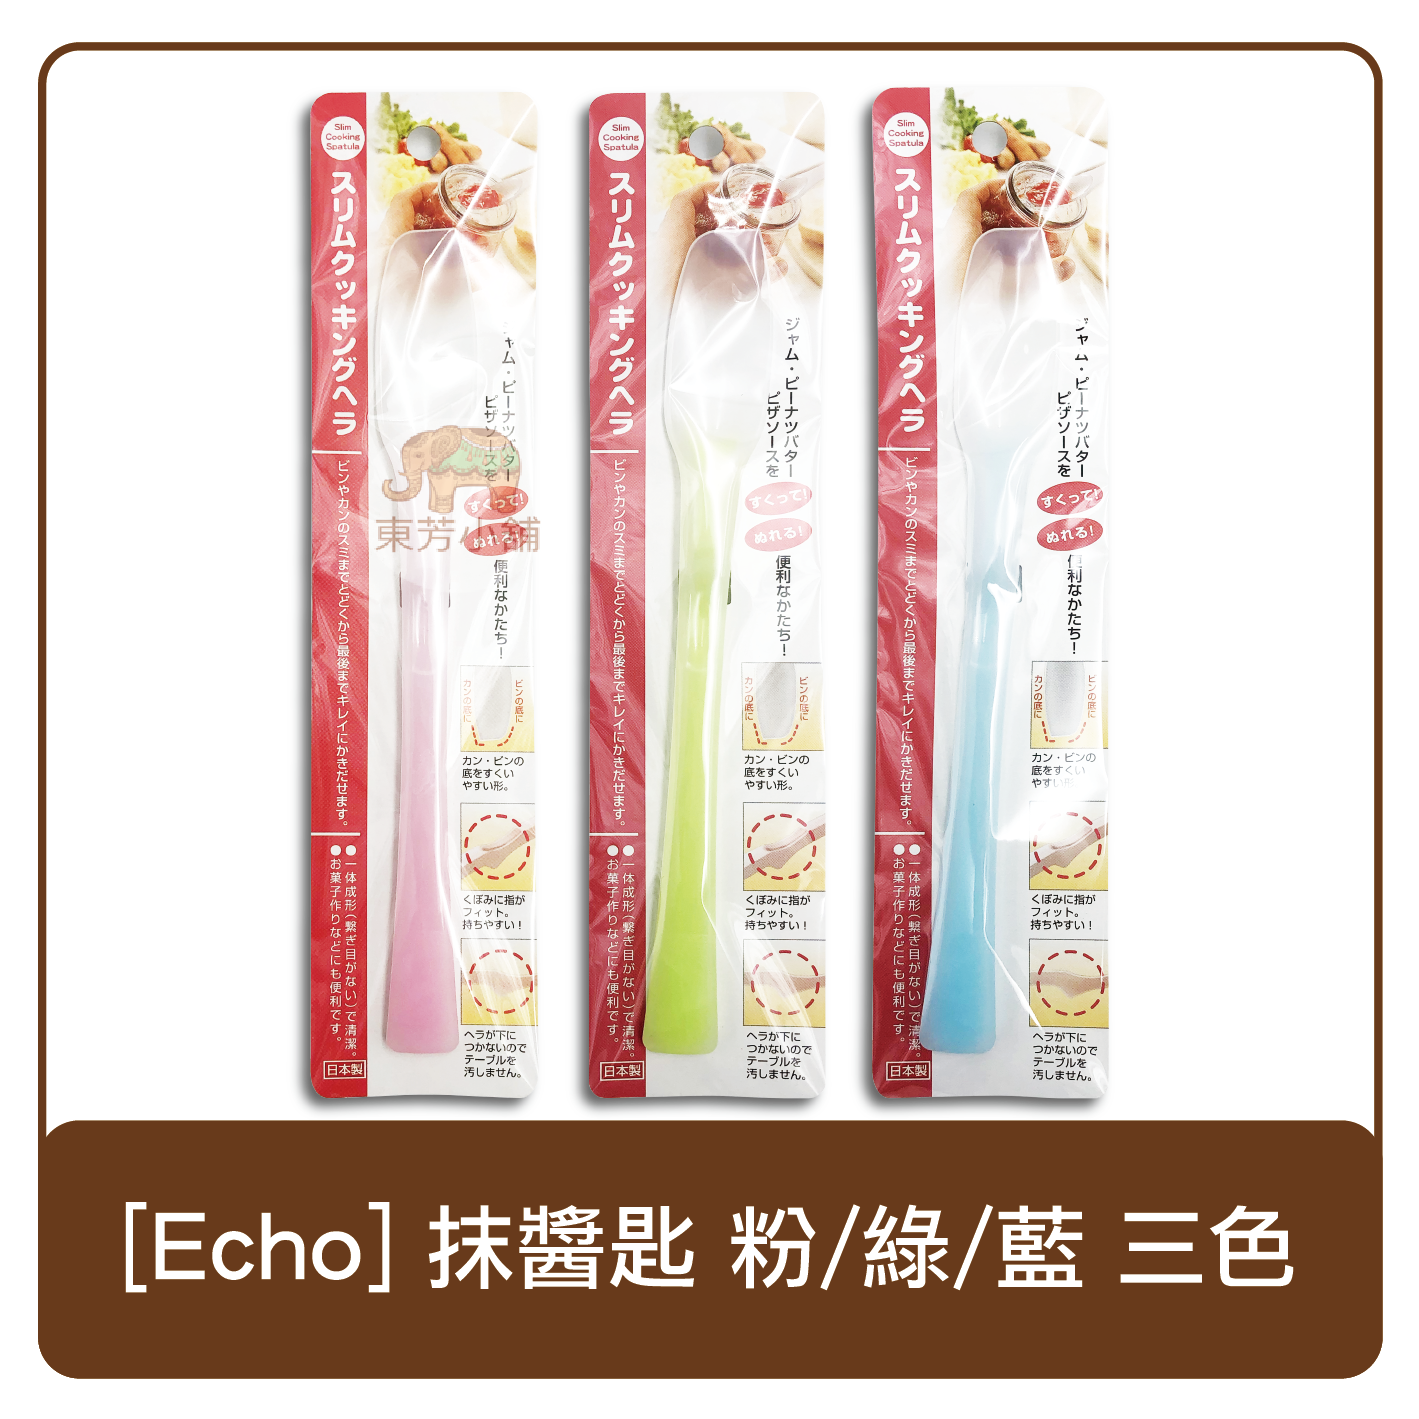 日本 Echo 抹醬匙 抹醬刀 粉/綠/藍 三色隨機出貨 抹醬 烘焙 工具